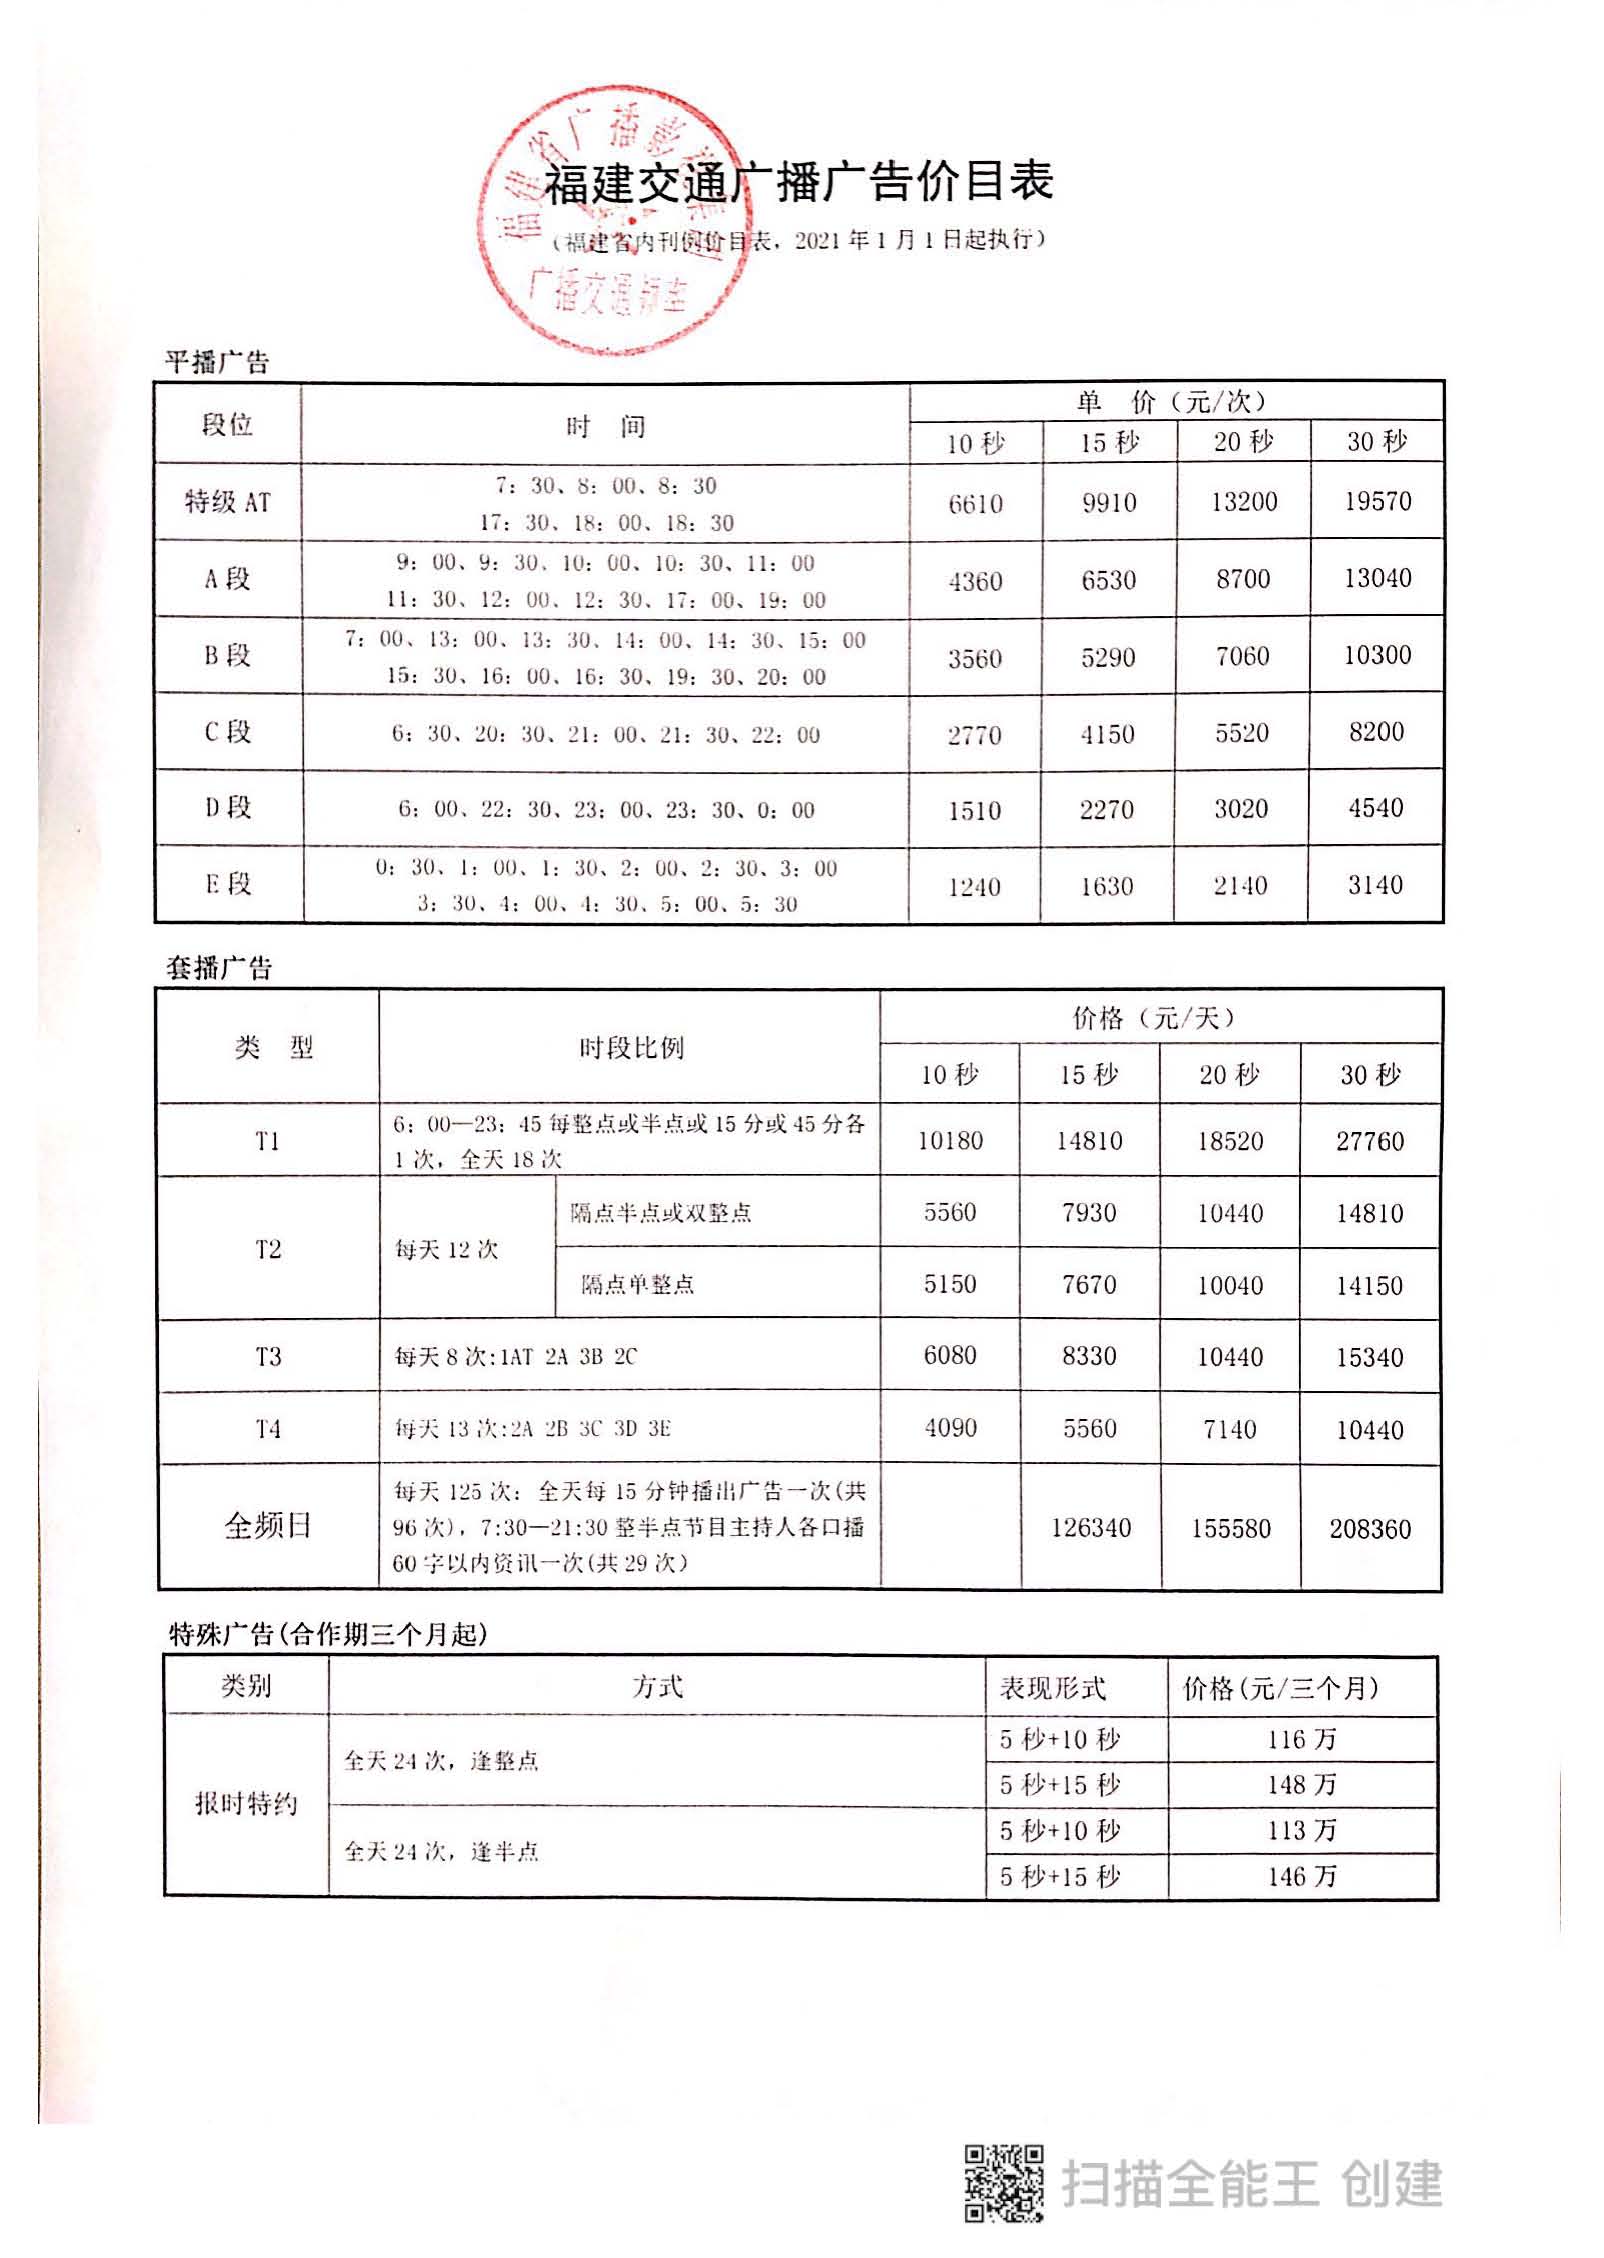 福建交通广播广告价格表2021.1.1（电台）_页面_1.jpg